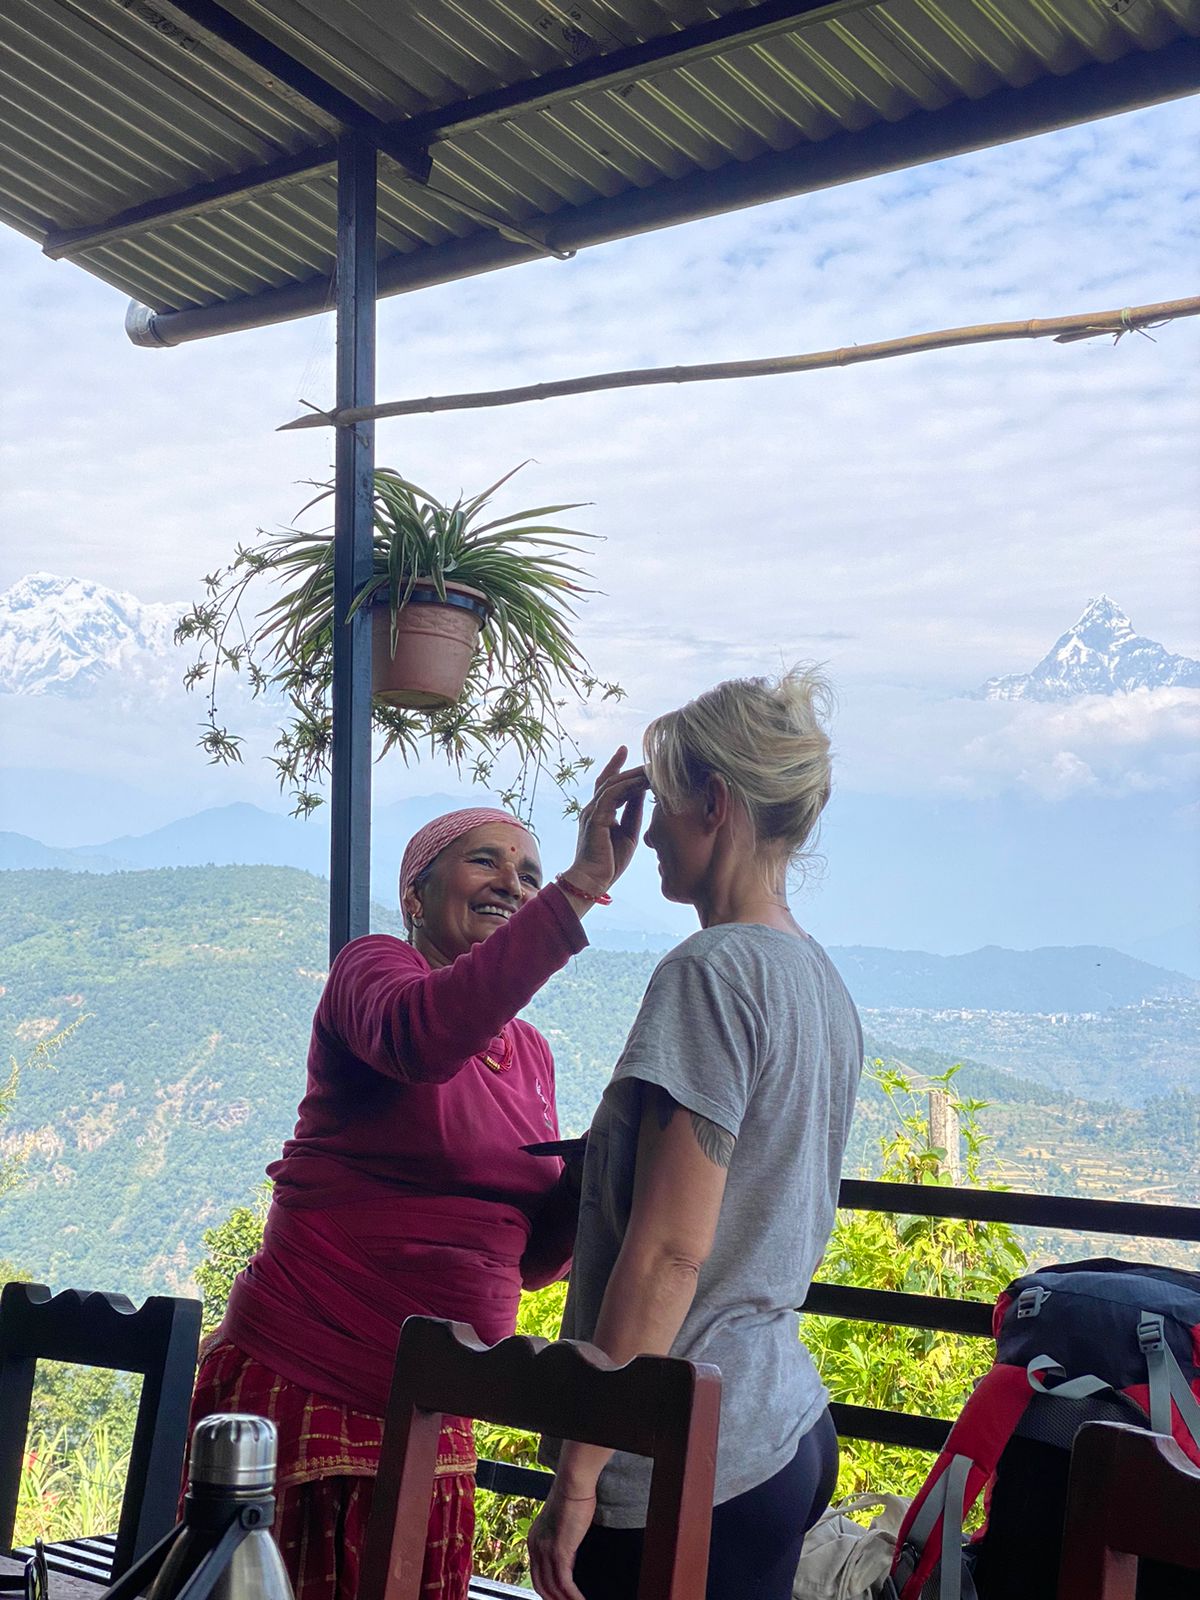 Nepalilainen vanha nainen piirtää tikaa suomalaisnaisen otsaan, taustalla vuoristomaisema